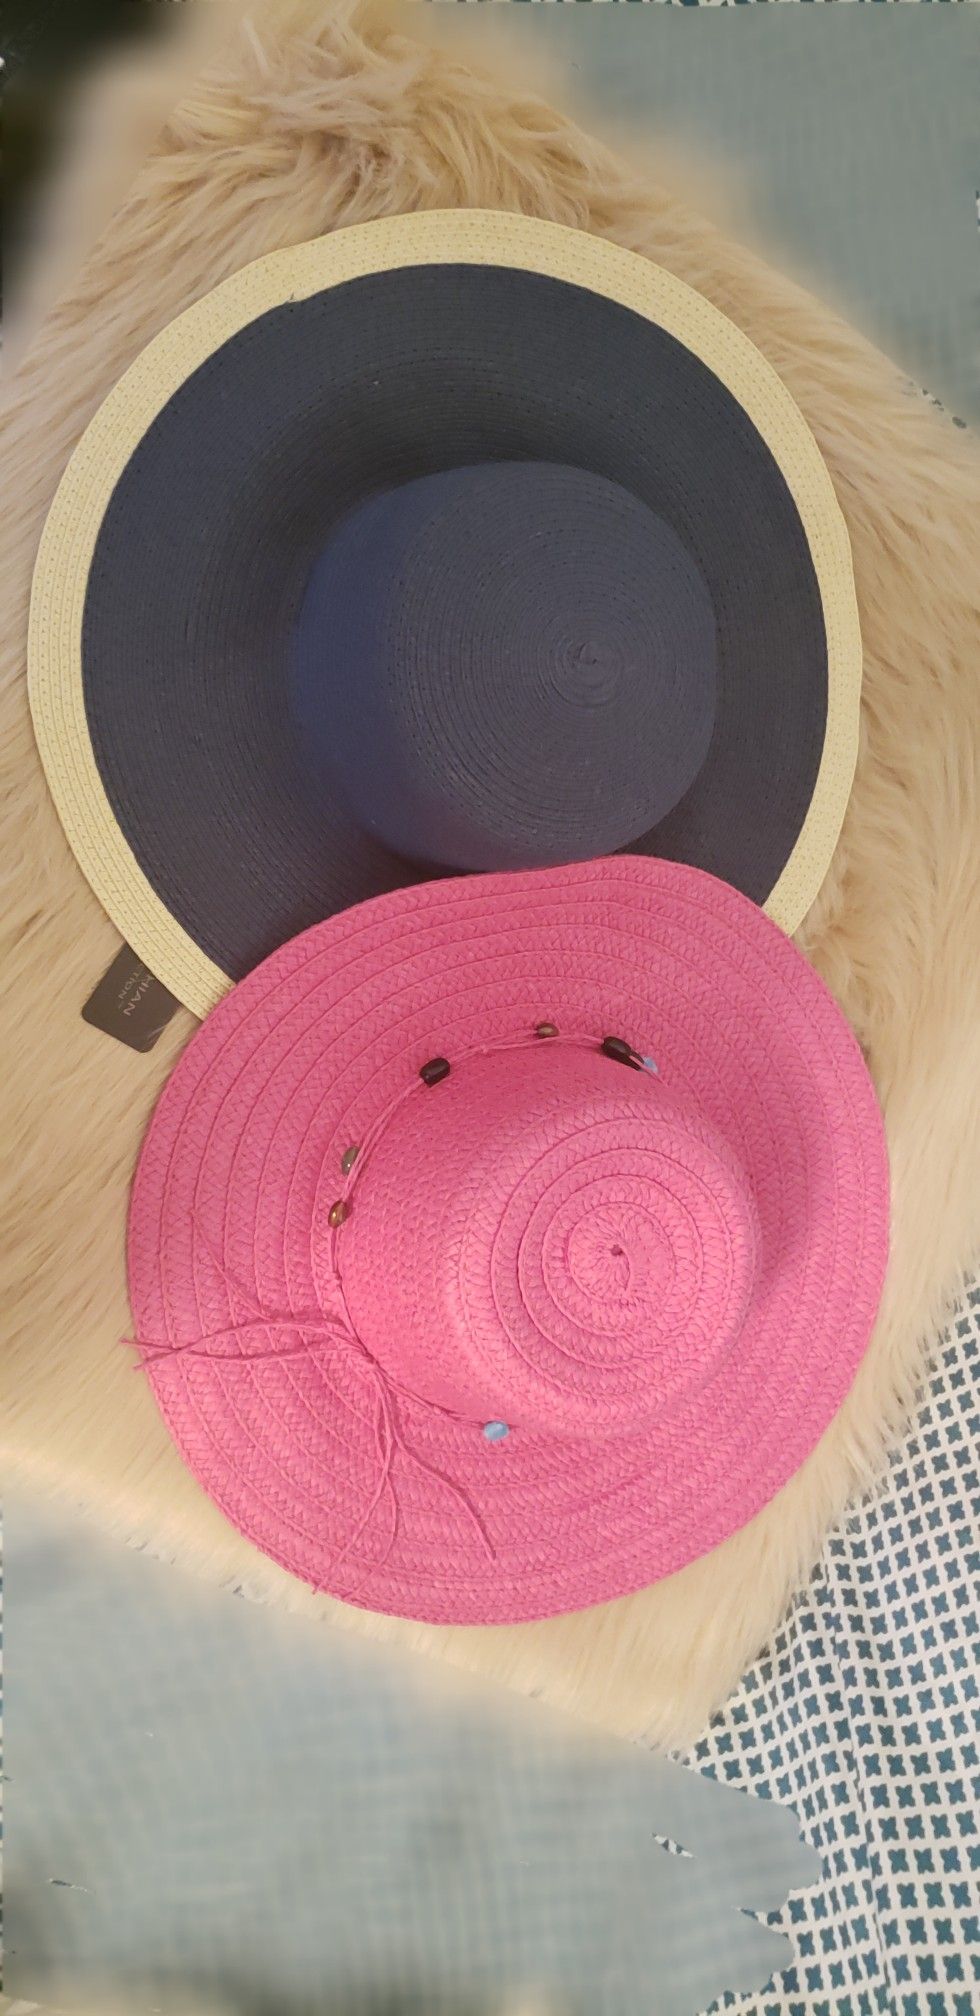 Kardashian kollection navy blue & regular pink floppy hats